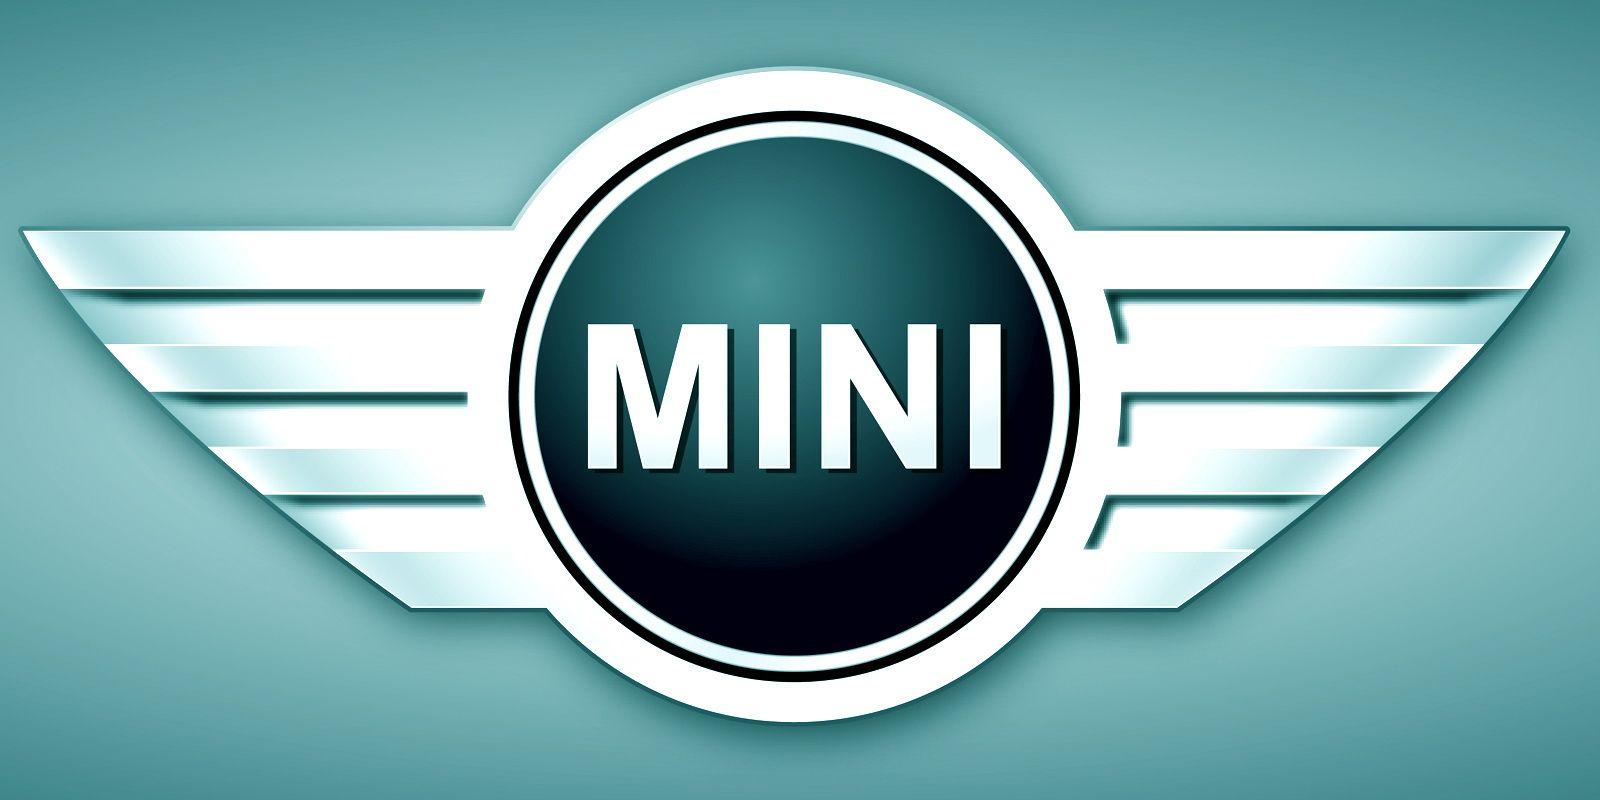 MINI Logo editorial stock photo. Image of auto, icon - 120804368